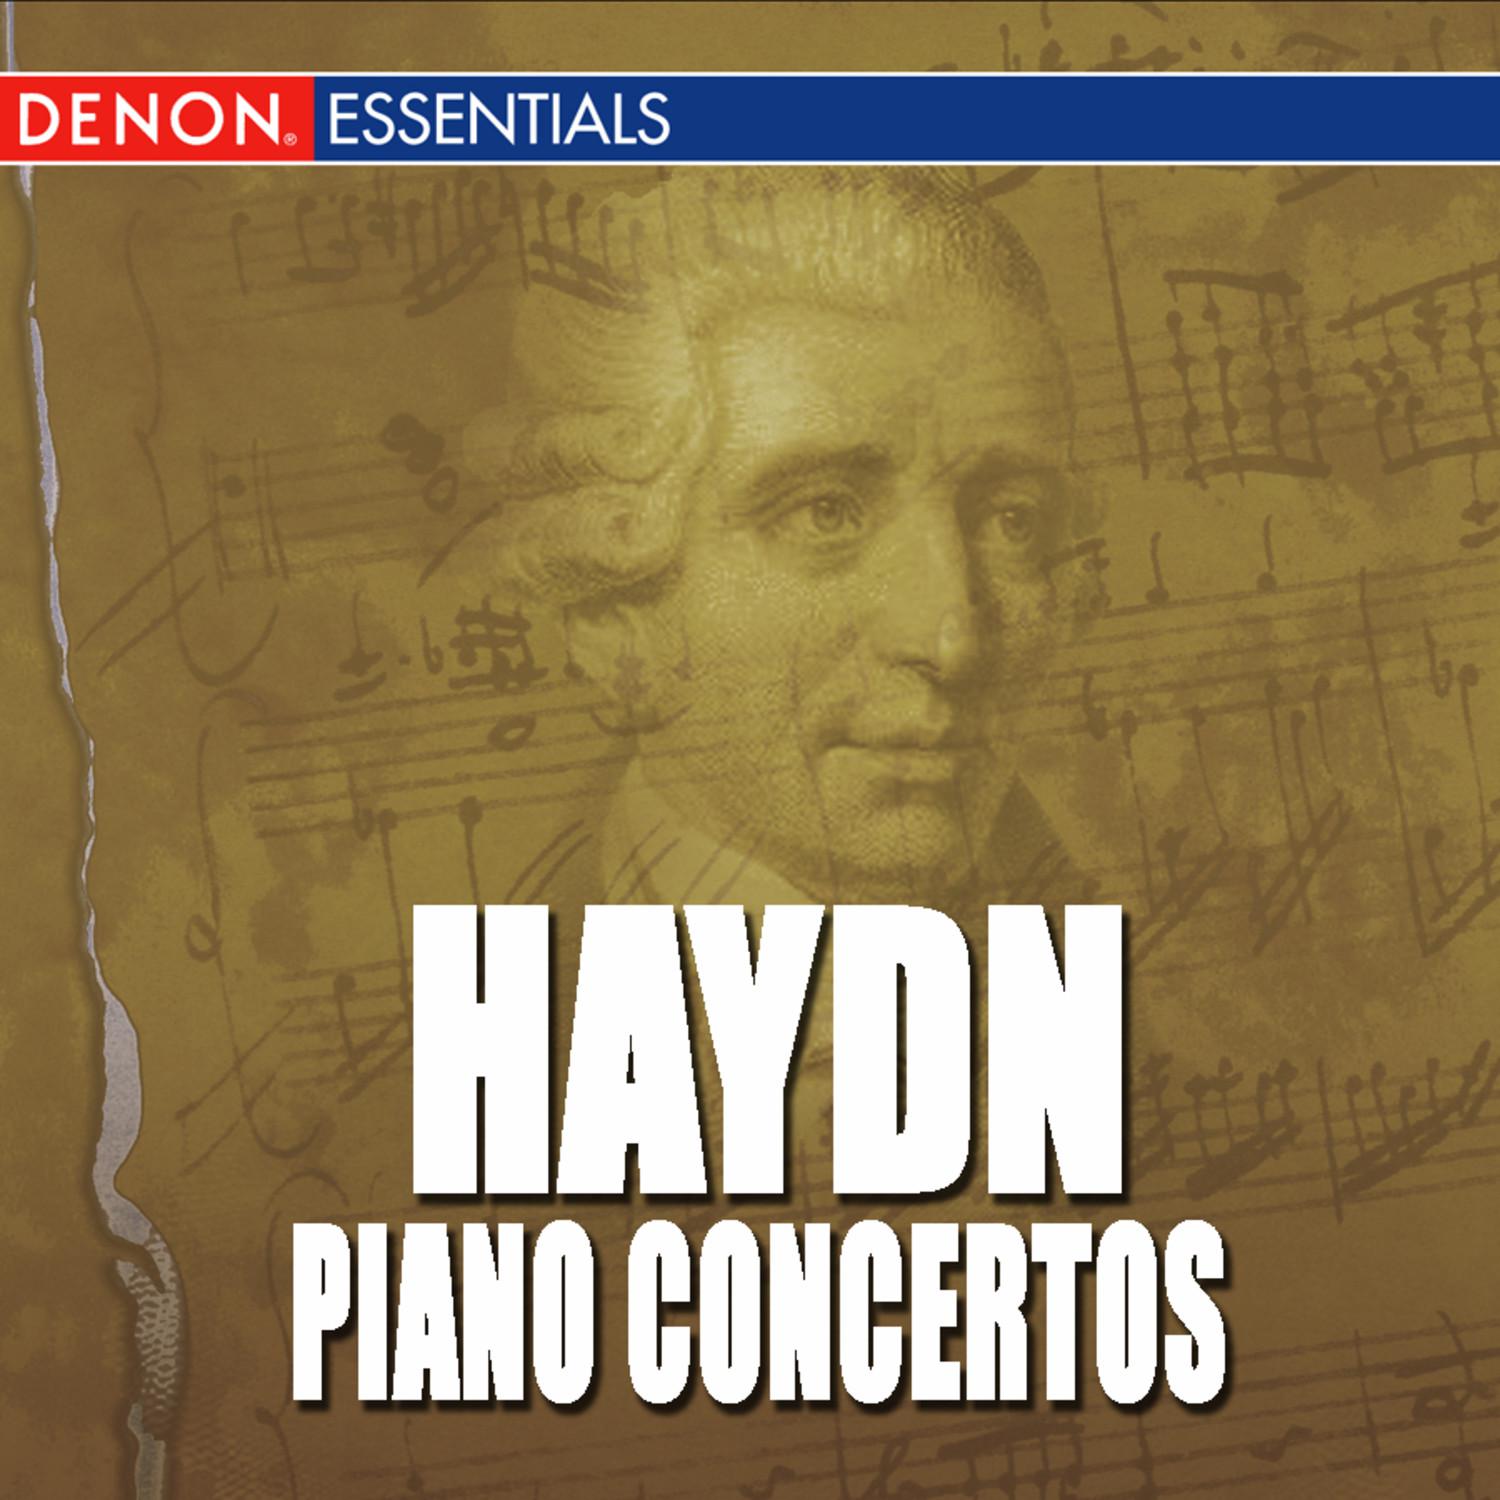 Concerto for Piano and Strings No. 11 in D Major, Op. 21, H 18: II. Un poco adagio